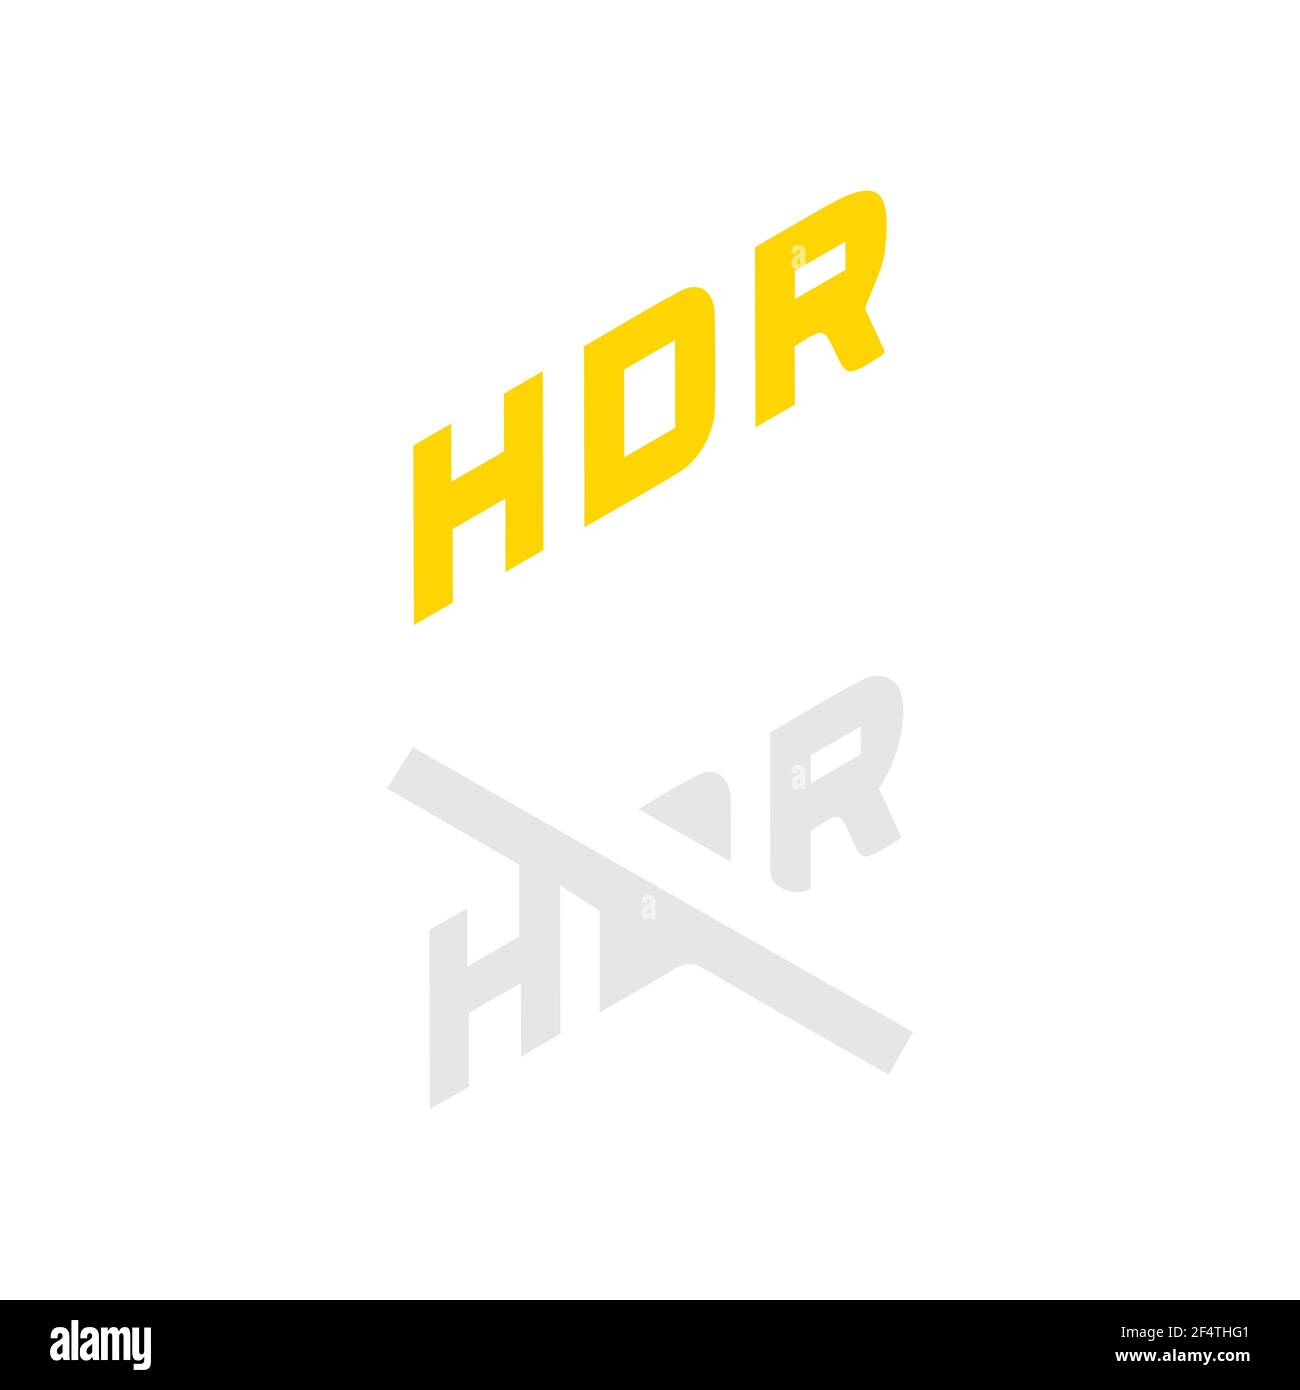 HDR ein aus Symbolvektor in isometrisch isoliert auf weiß Hintergrund Vektor EPS 10 Stock Vektor